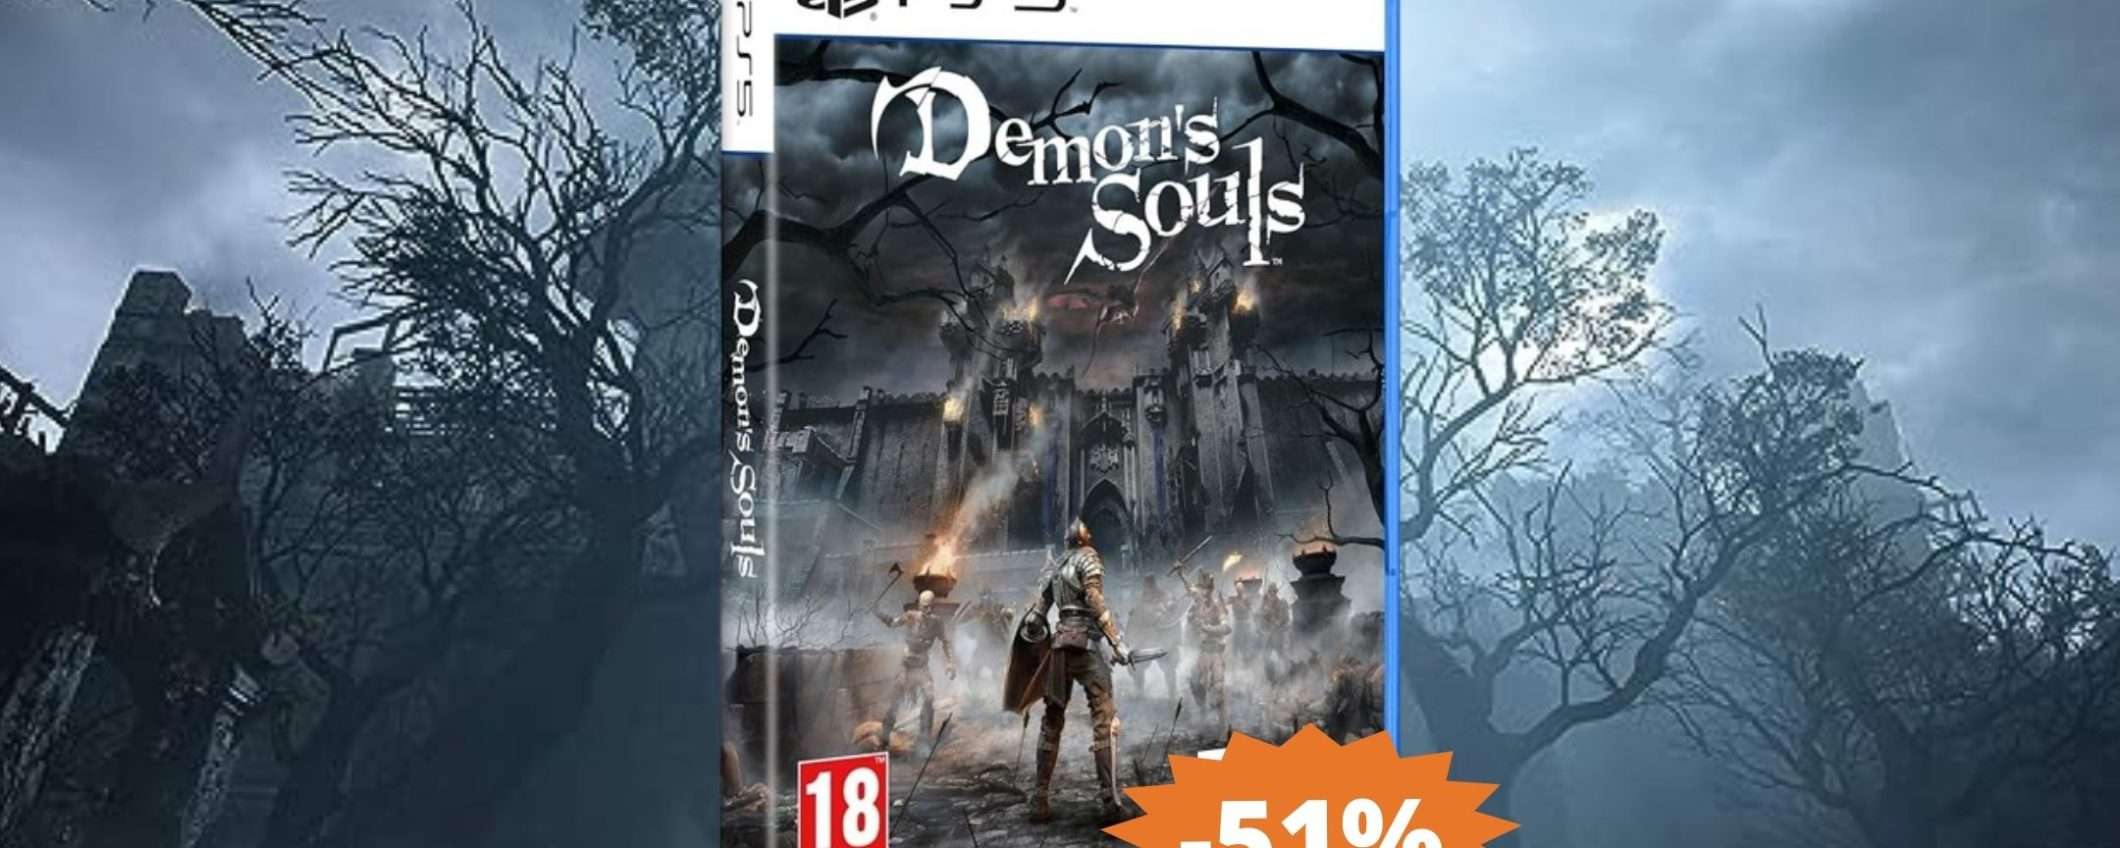 Demon's Souls per PS5: CROLLO del prezzo su Amazon (-51%)